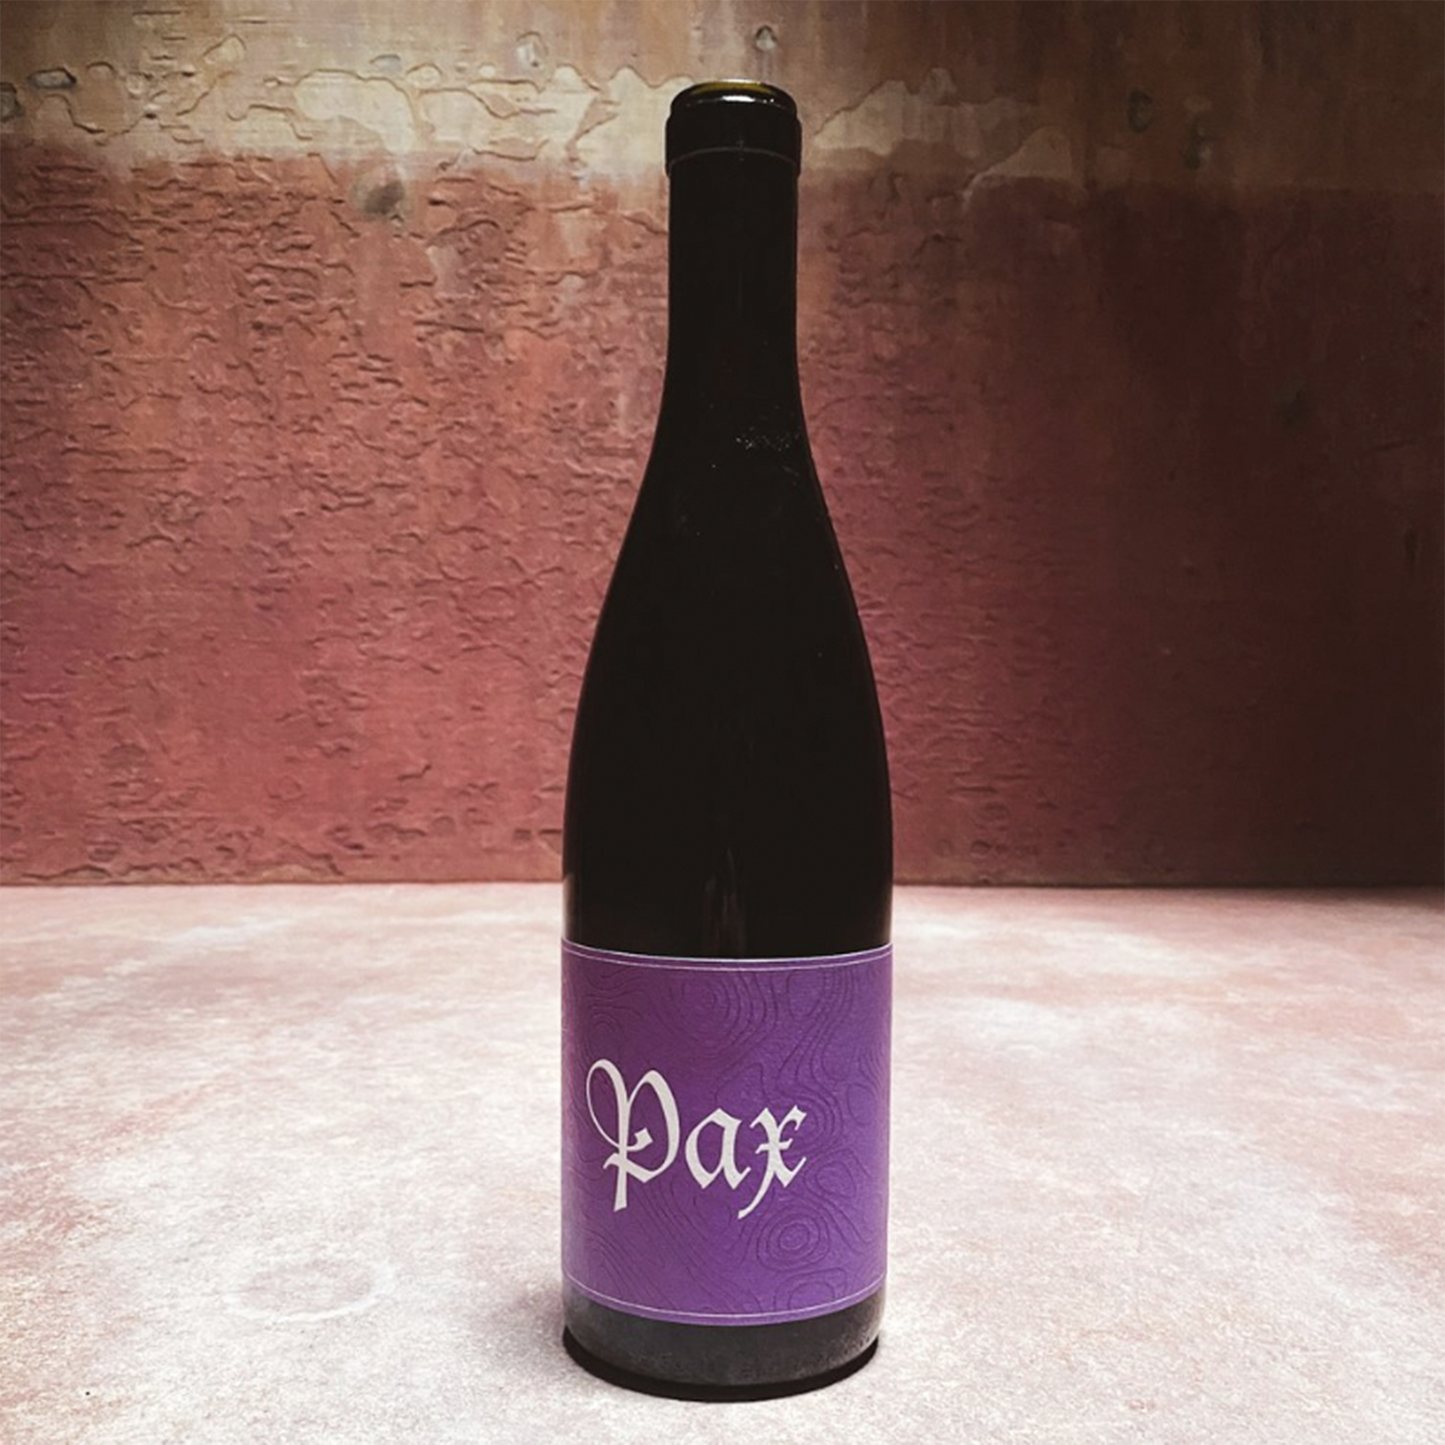 Pax Grenache, Alder Springs Vineyard 2021 (750 ml)